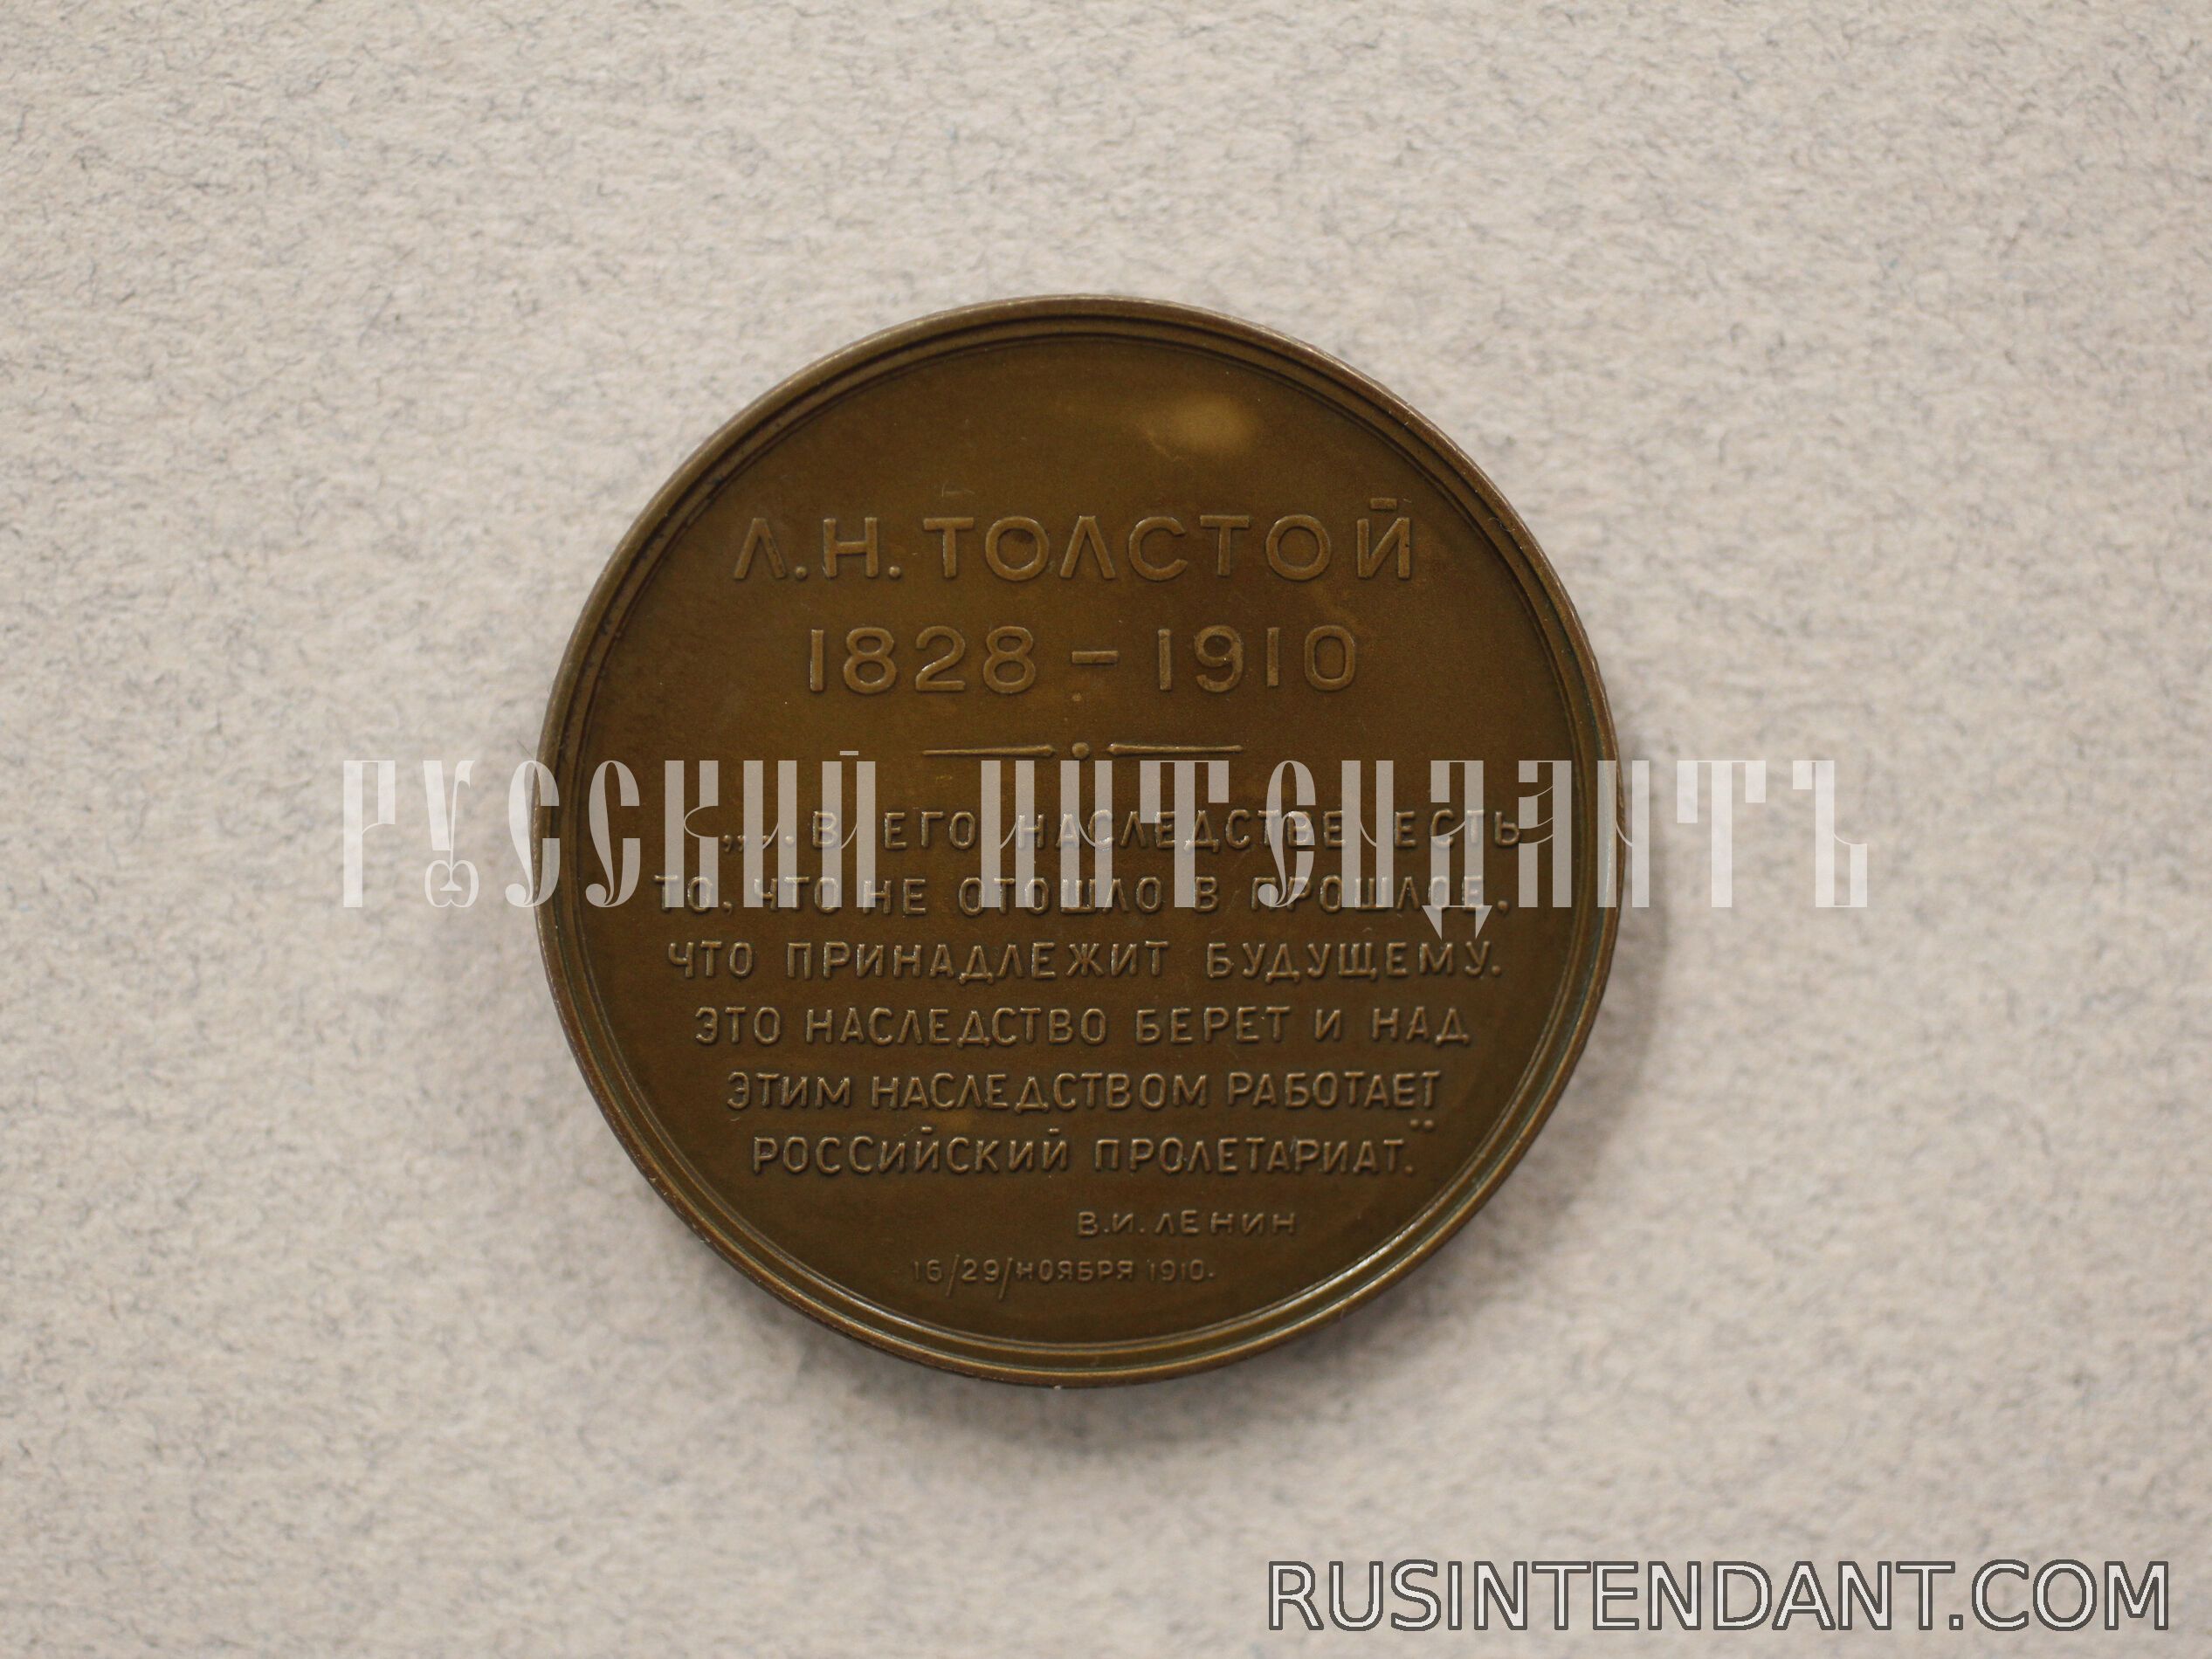 Фото 2: Настольная медаль «Л.Н. Толстой 1828 – 1910» 